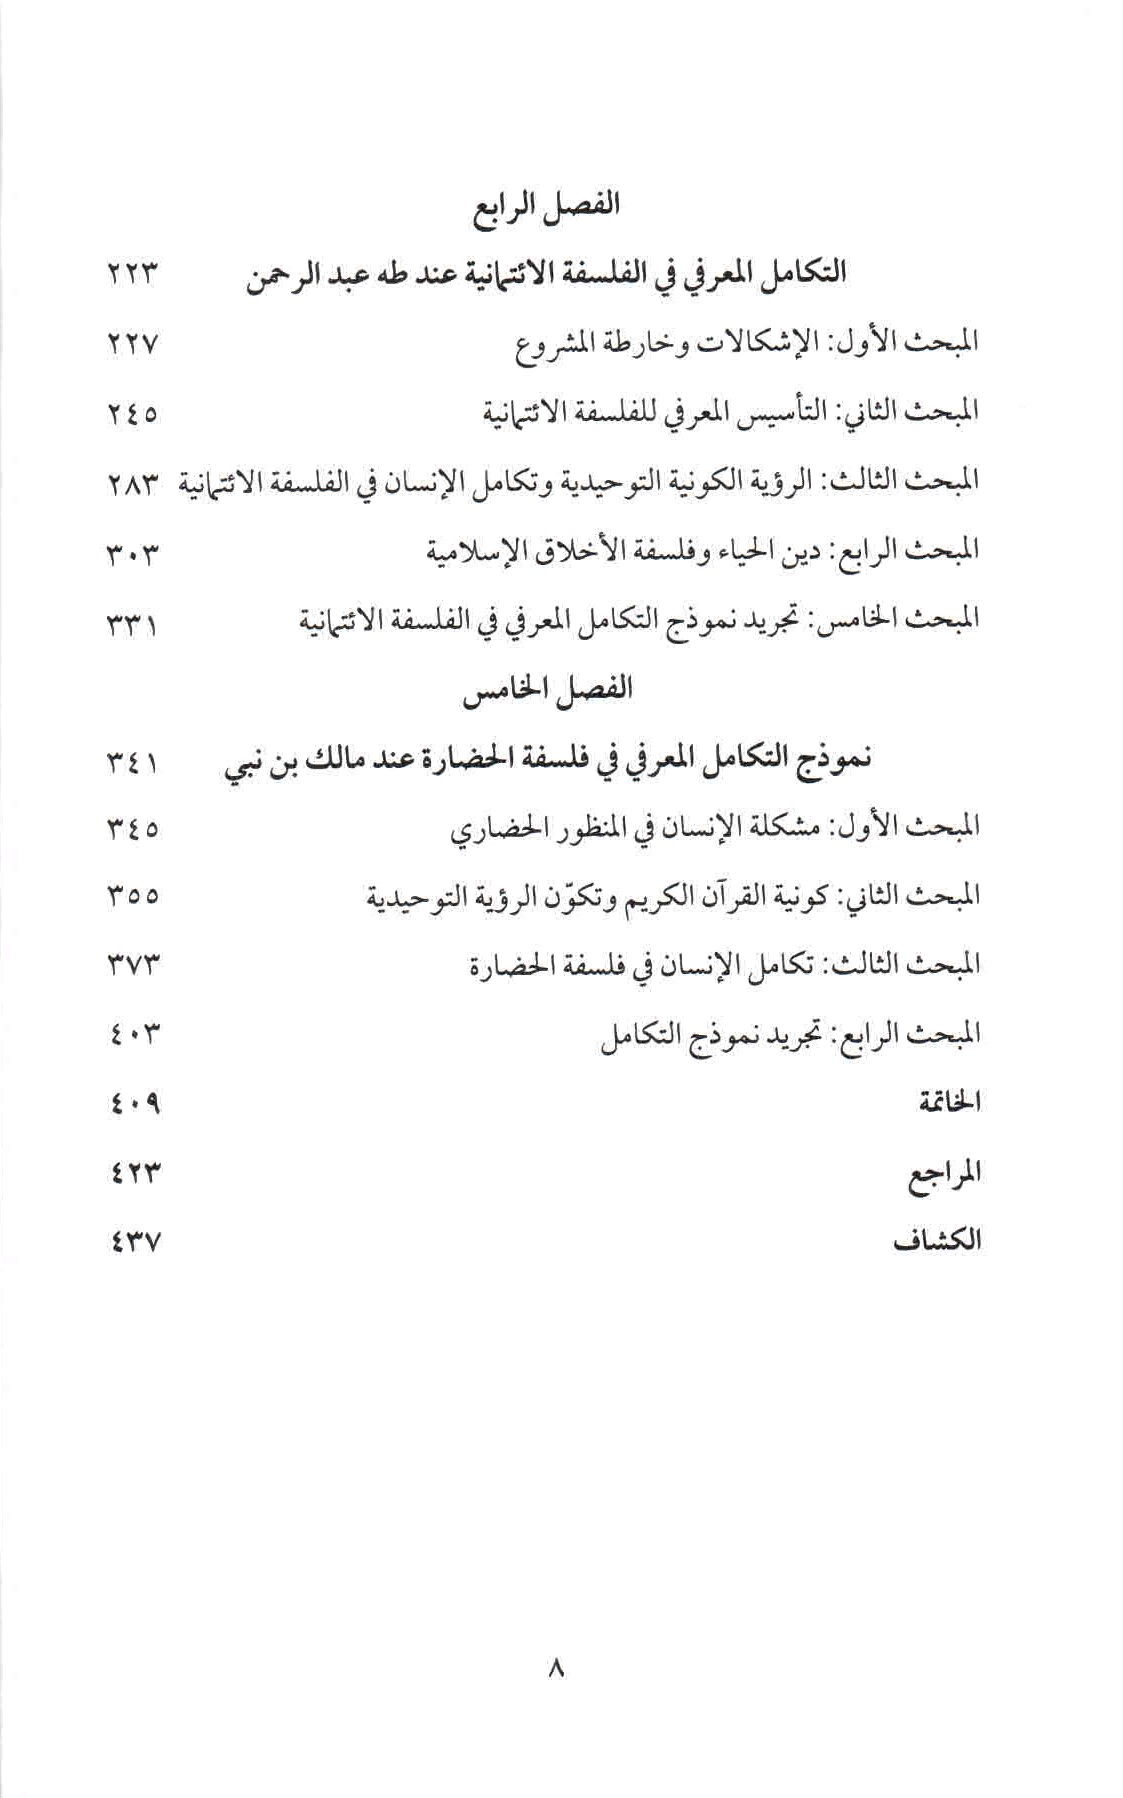 ص. 8 قائمة محتويات كتاب التكامل المعرفي عند أهل النظر التوحيدي.